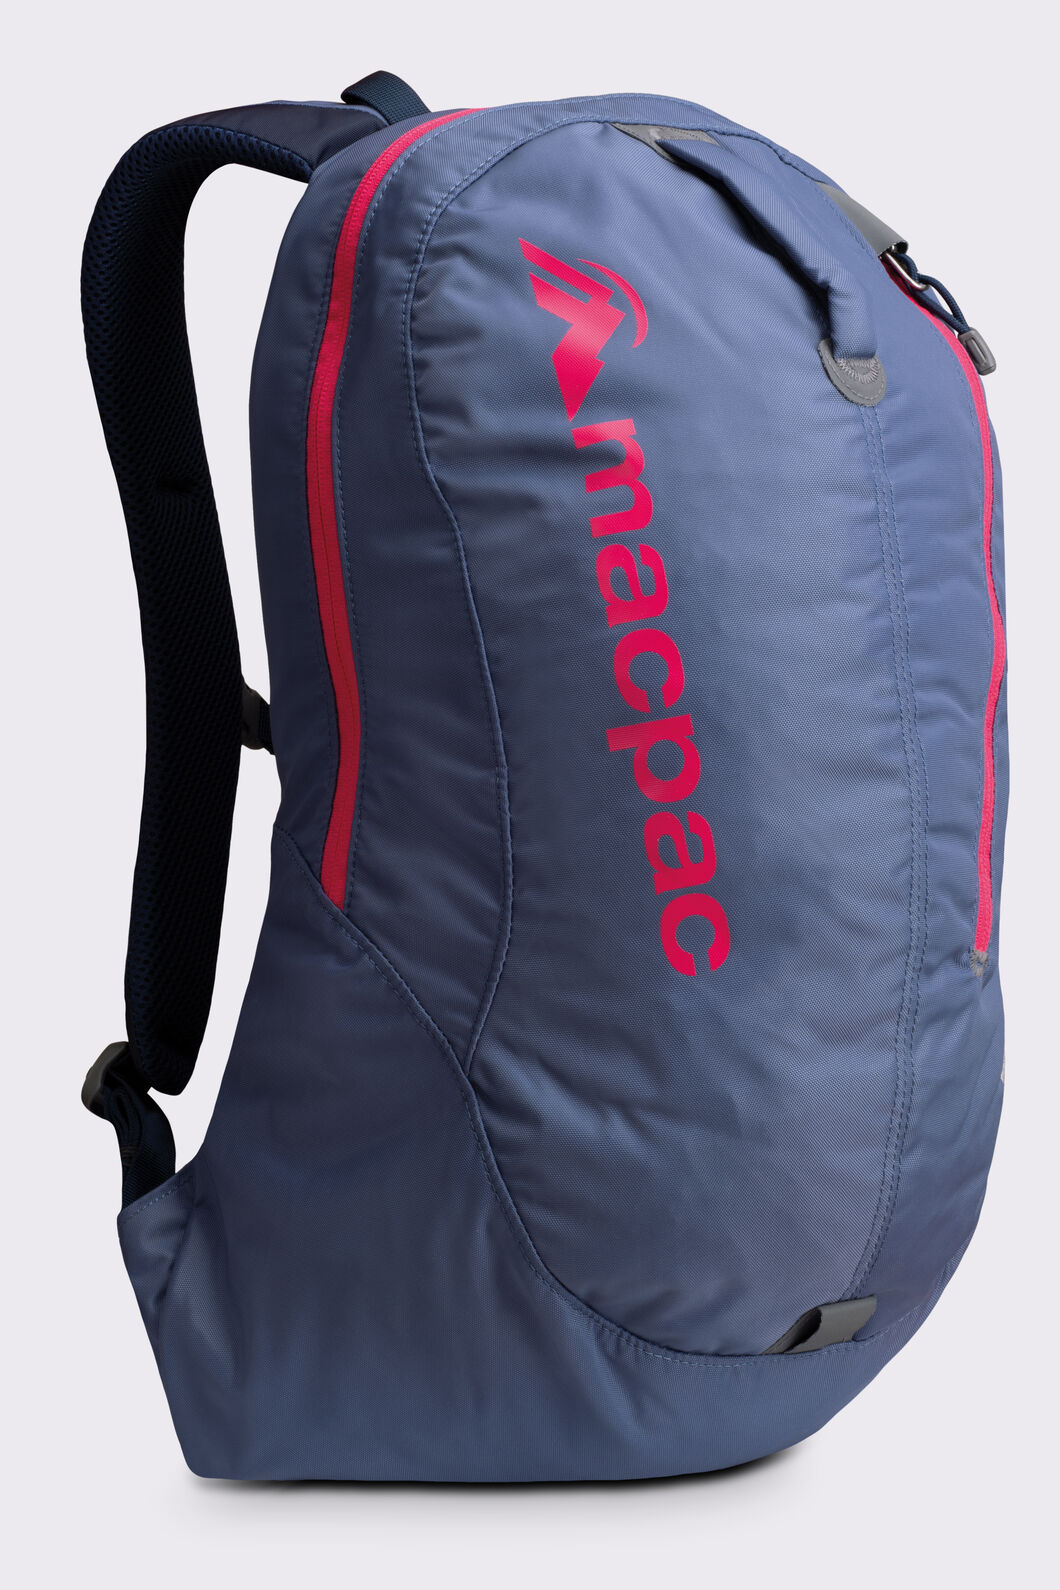 Macpac Kahuna 18L Backpack, Blue Indigo, hi-res